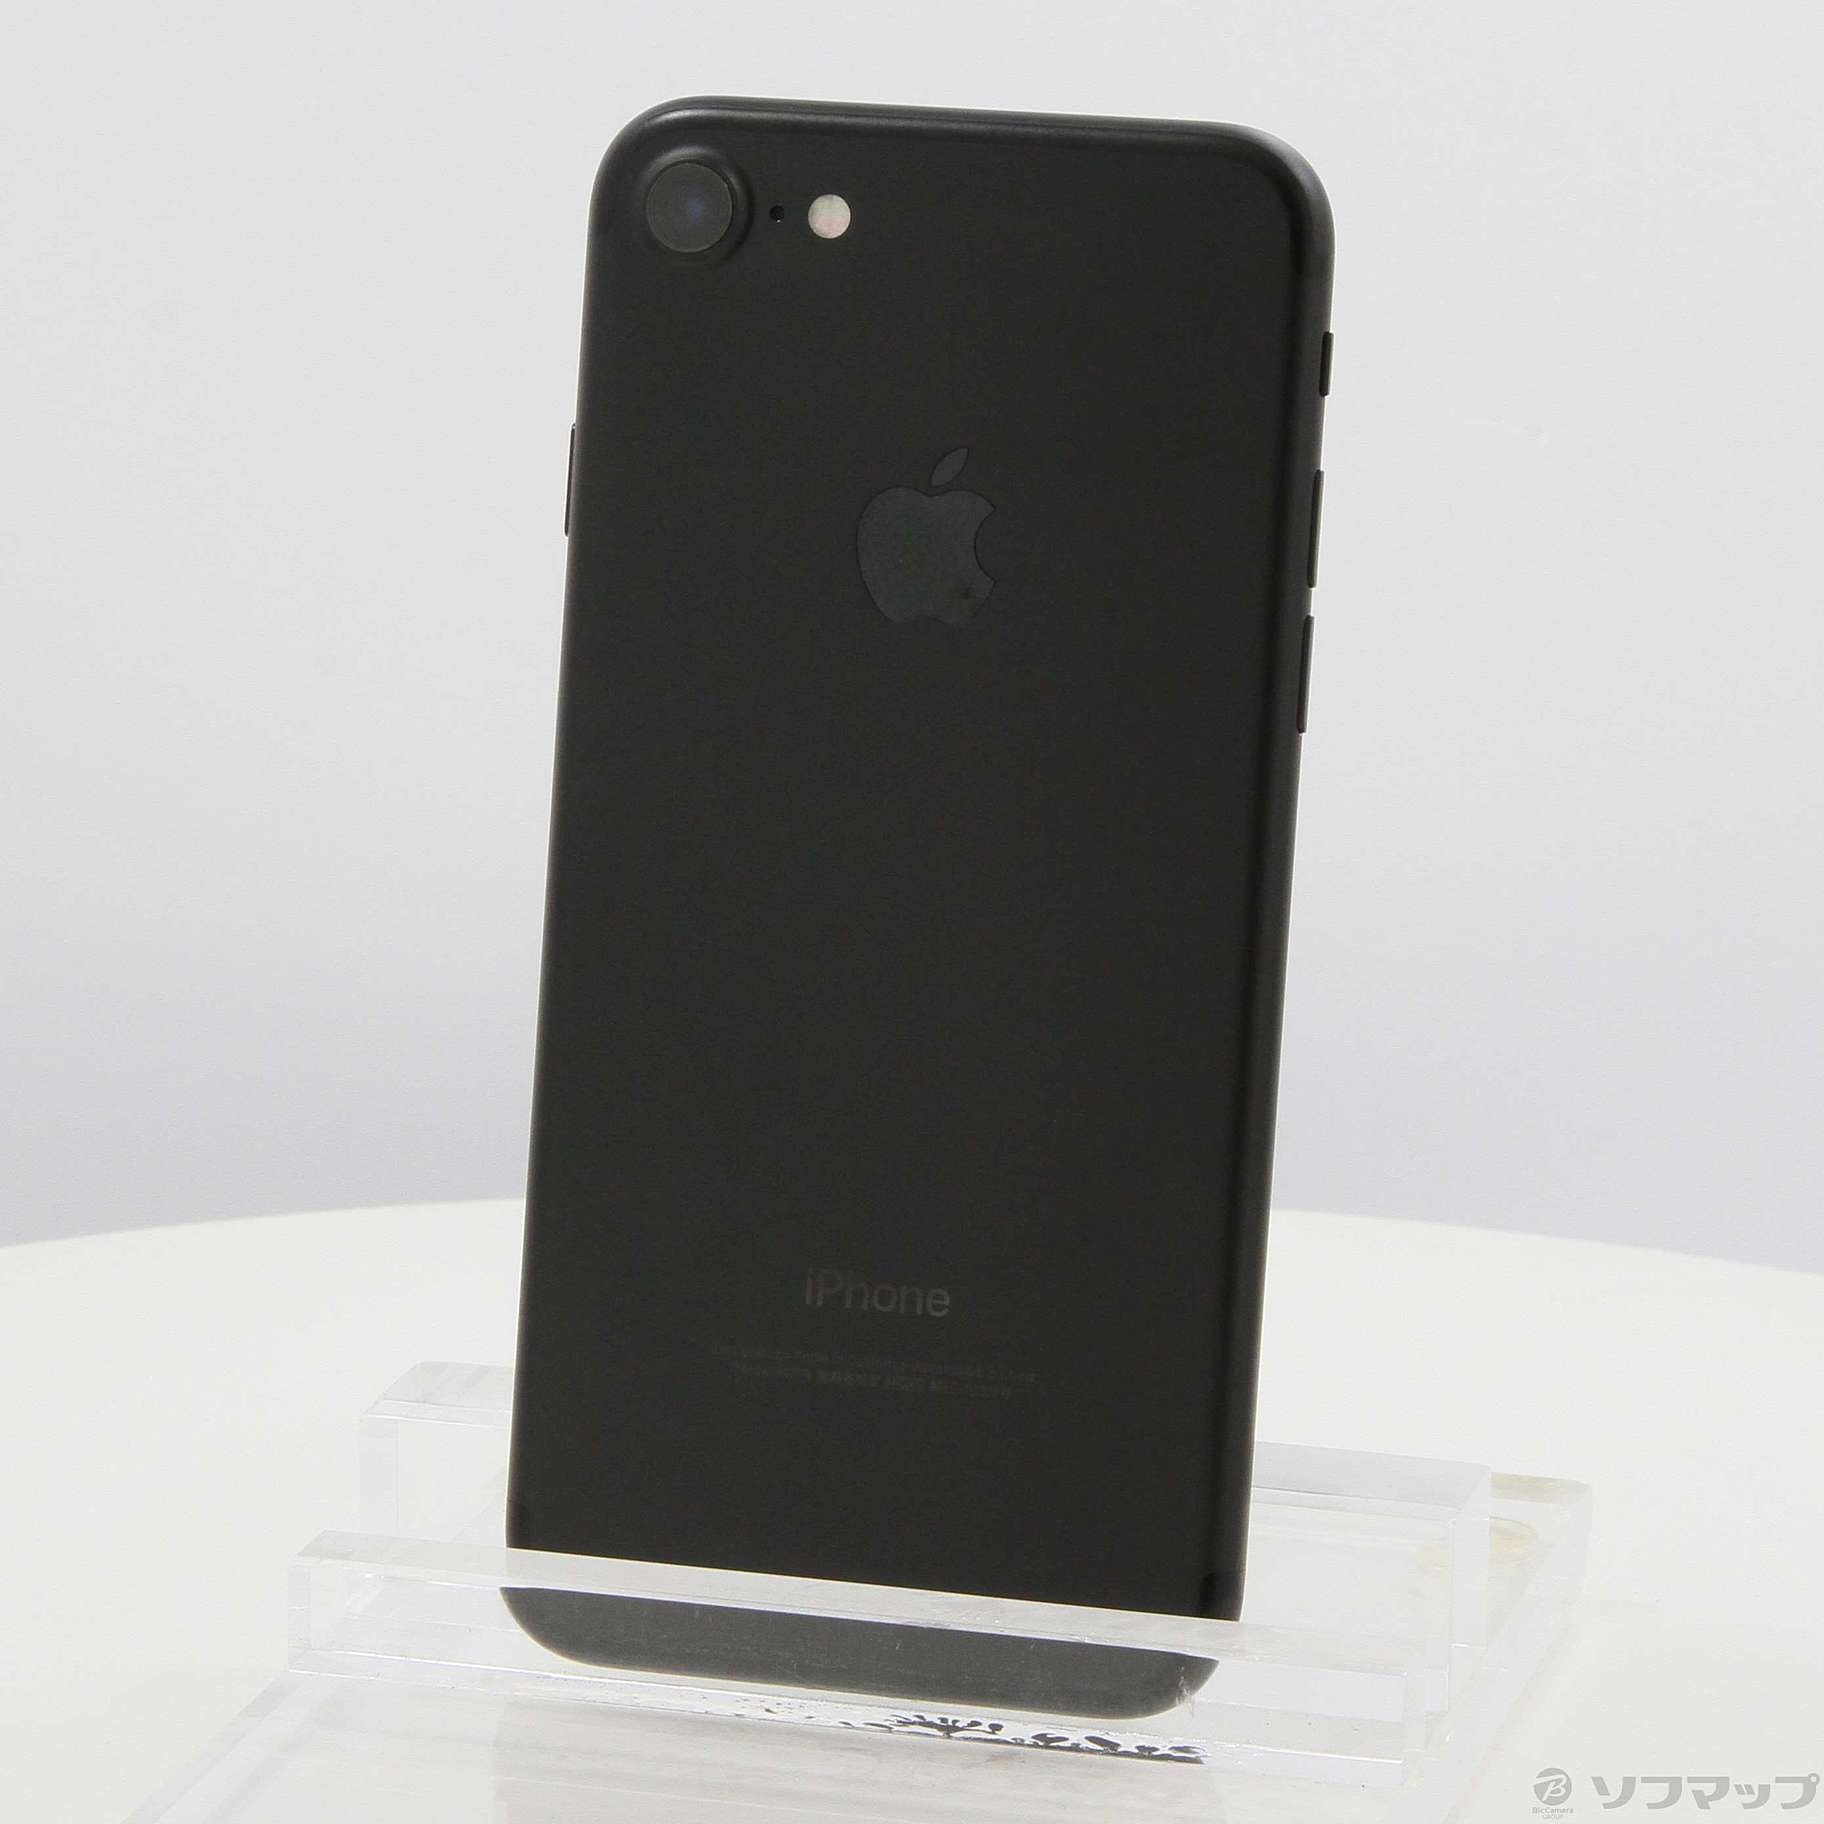 iPhone 7 ブラック 256GB SIMフリー版 MNCQ2J/A